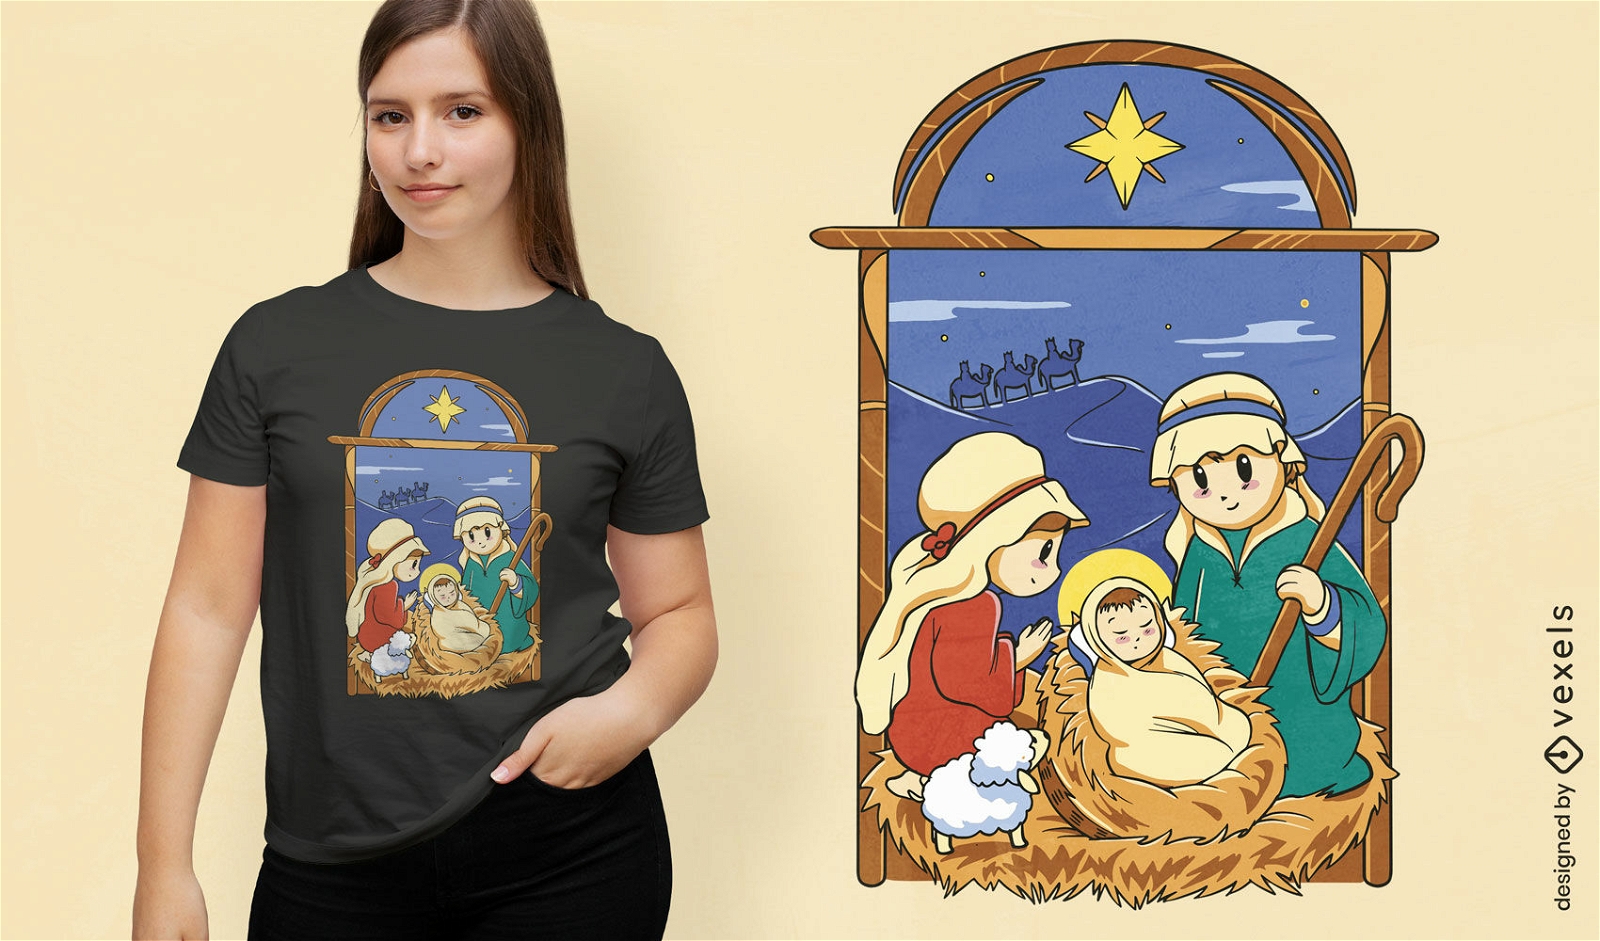 Diseño de camiseta navideña del nacimiento de jesús.